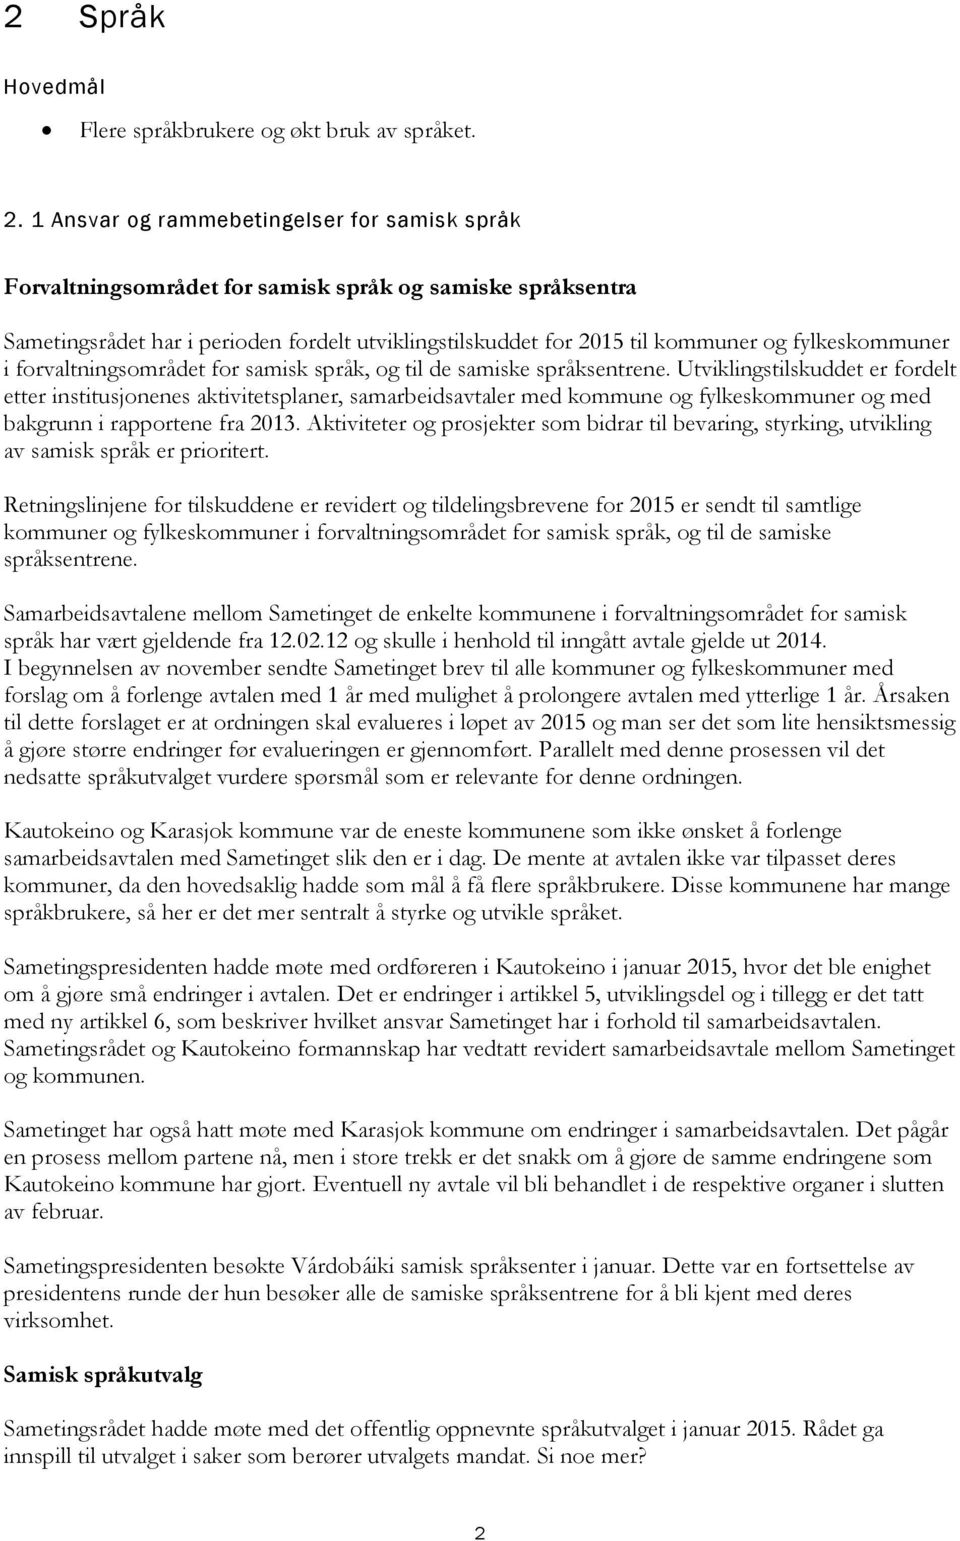 fylkeskommuner i forvaltningsområdet for samisk språk, og til de samiske språksentrene.